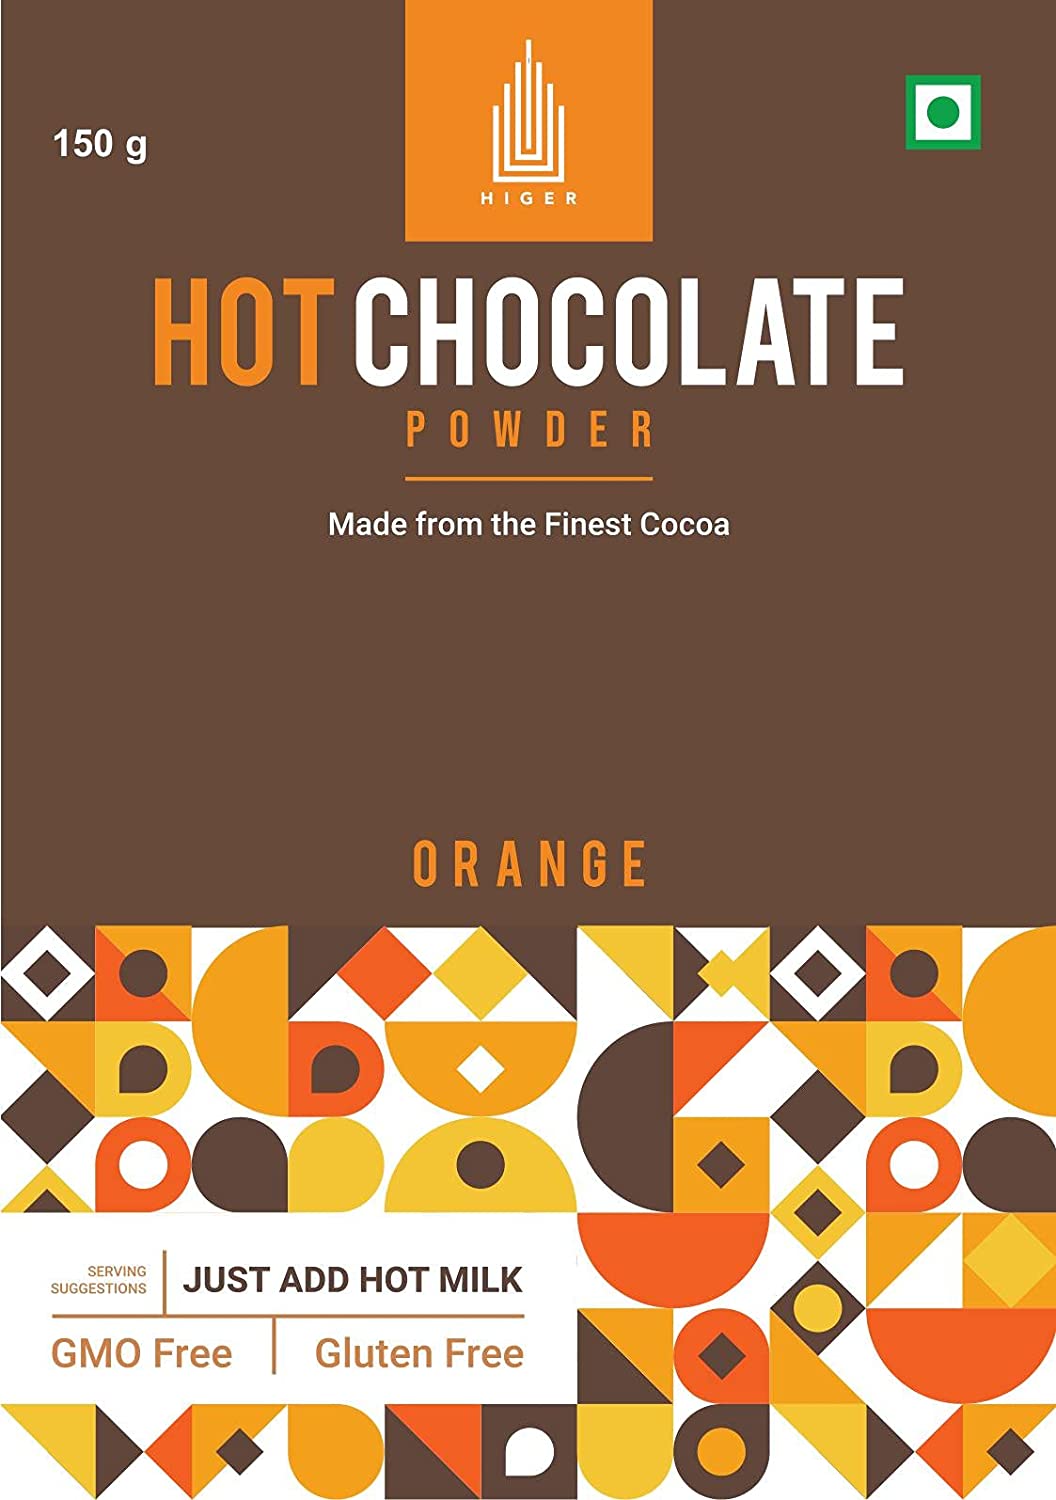 Higer Hot Chocolate Orange Image